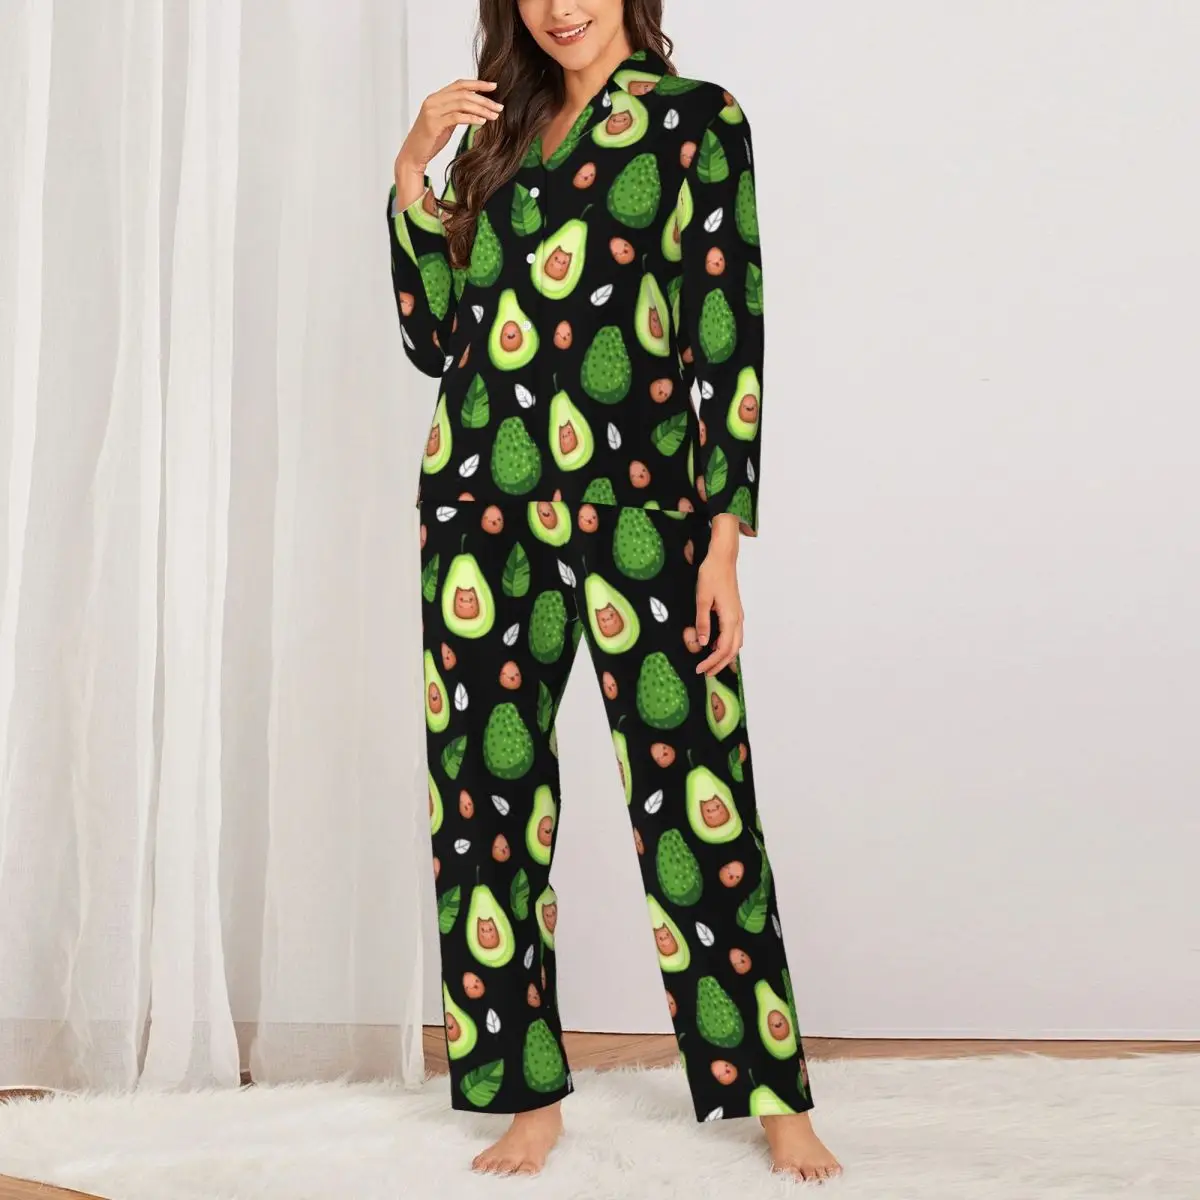 

Пижамный комплект Kawaii авокадо Осенняя Ночная пижама с принтом зеленых фруктов Женская Повседневная Ночная рубашка из 2 предметов большого размера Дизайнерская одежда для сна подарок на день рождения